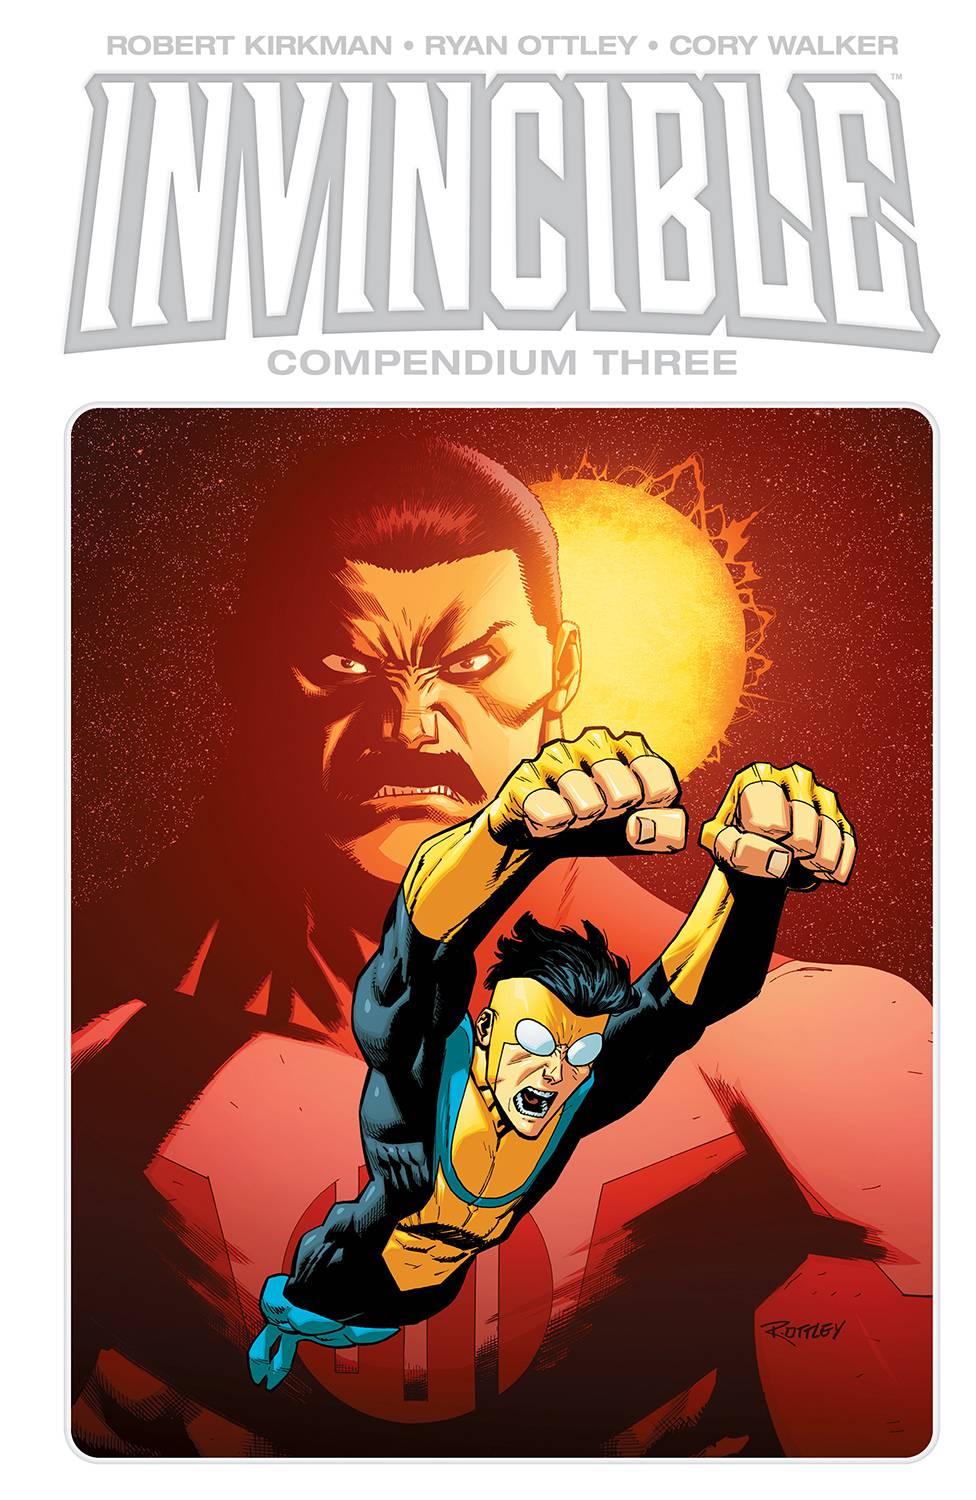 Invincible (Image Comics), Versus Compendium Wiki